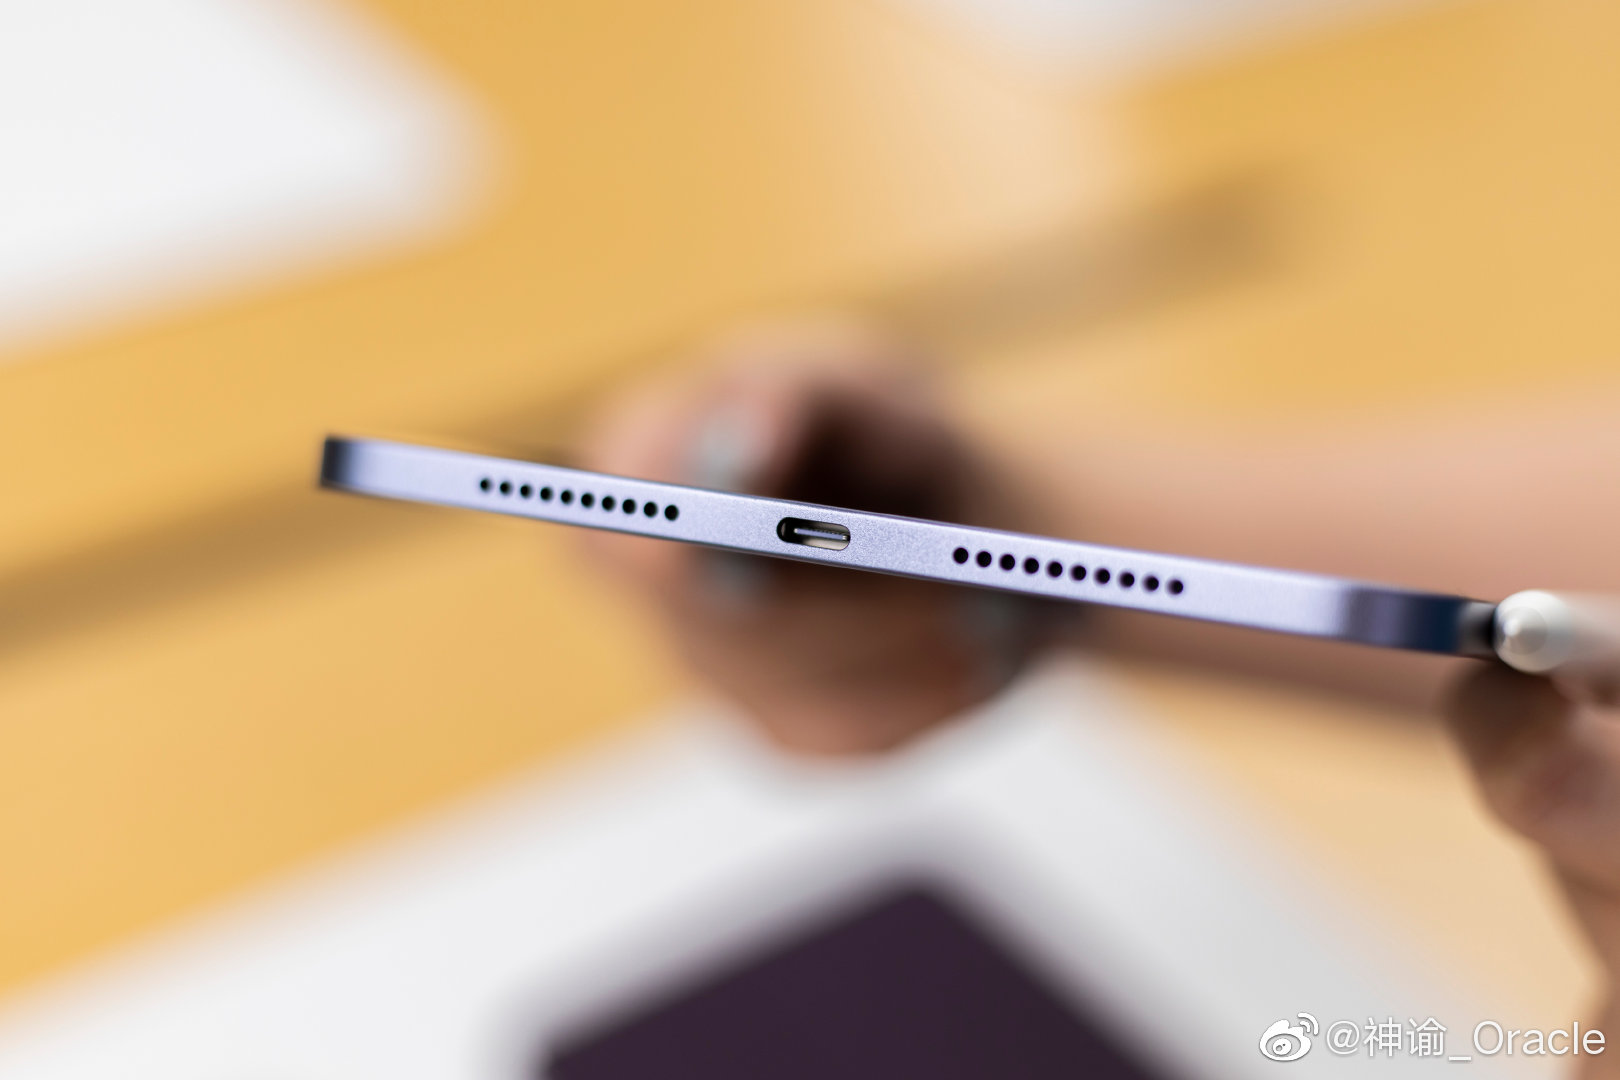 Sforum - Trang thông tin công nghệ mới nhất 0028aspHgy1gupry5v6t7j61900u0tb402 Trên tay iPad mini 6: Thiết kế mới, màn hình 8.3 inch, hiệu năng cực đỉnh với Apple A15, giá dự kiến từ 14.5 triệu đồng 